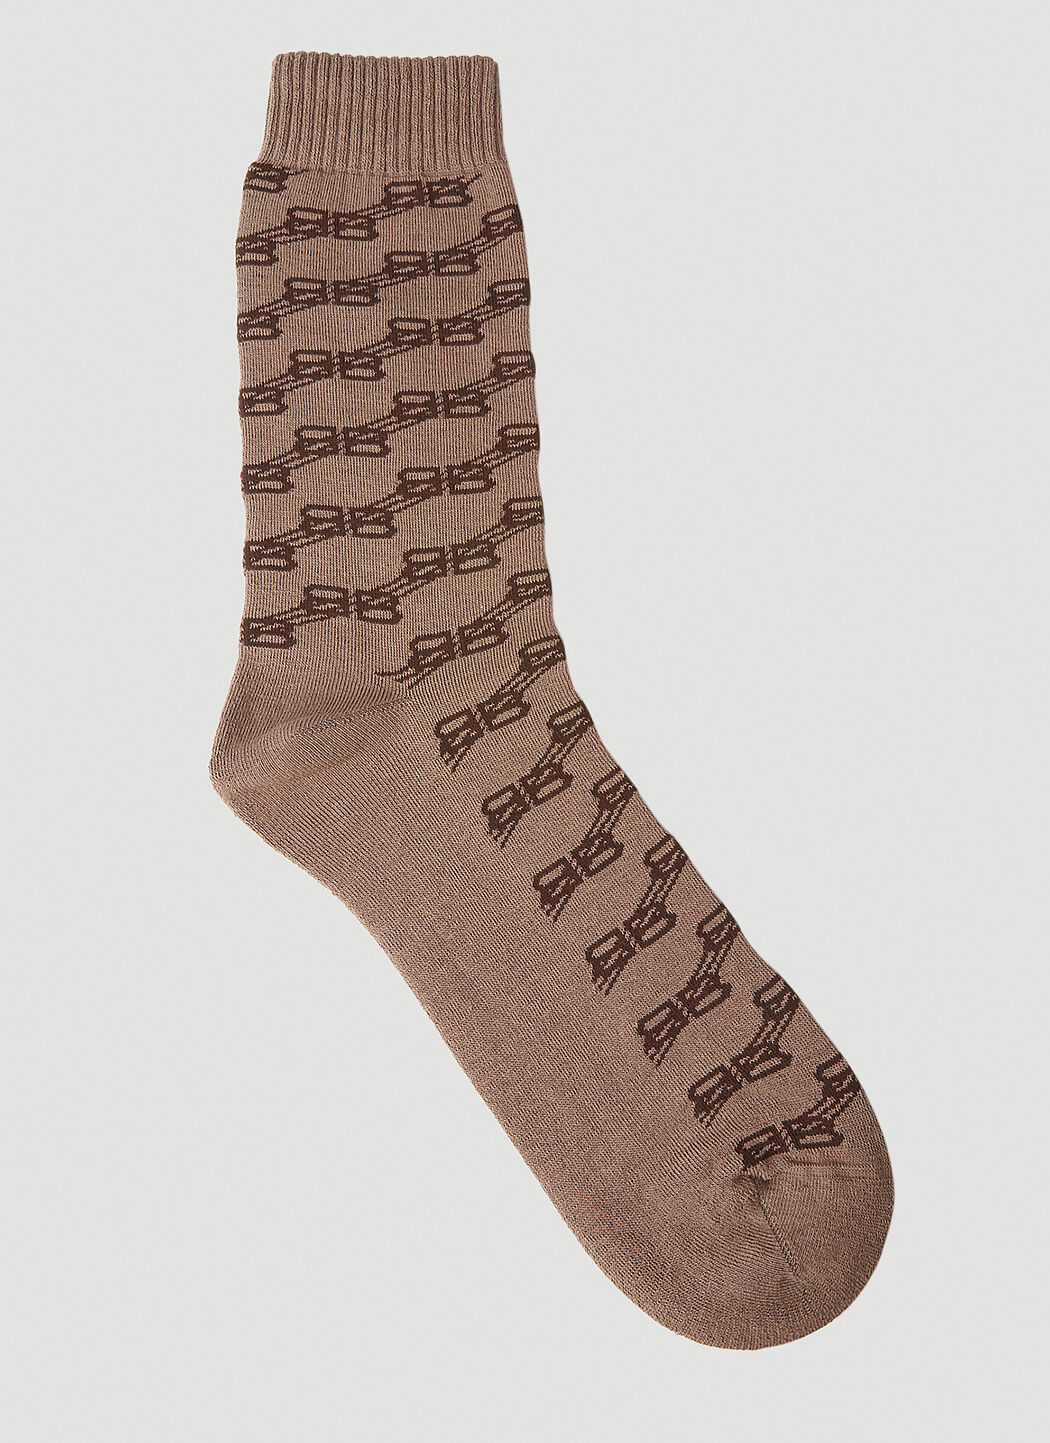 Kenzo BB Monogram Socks Black knz0154035